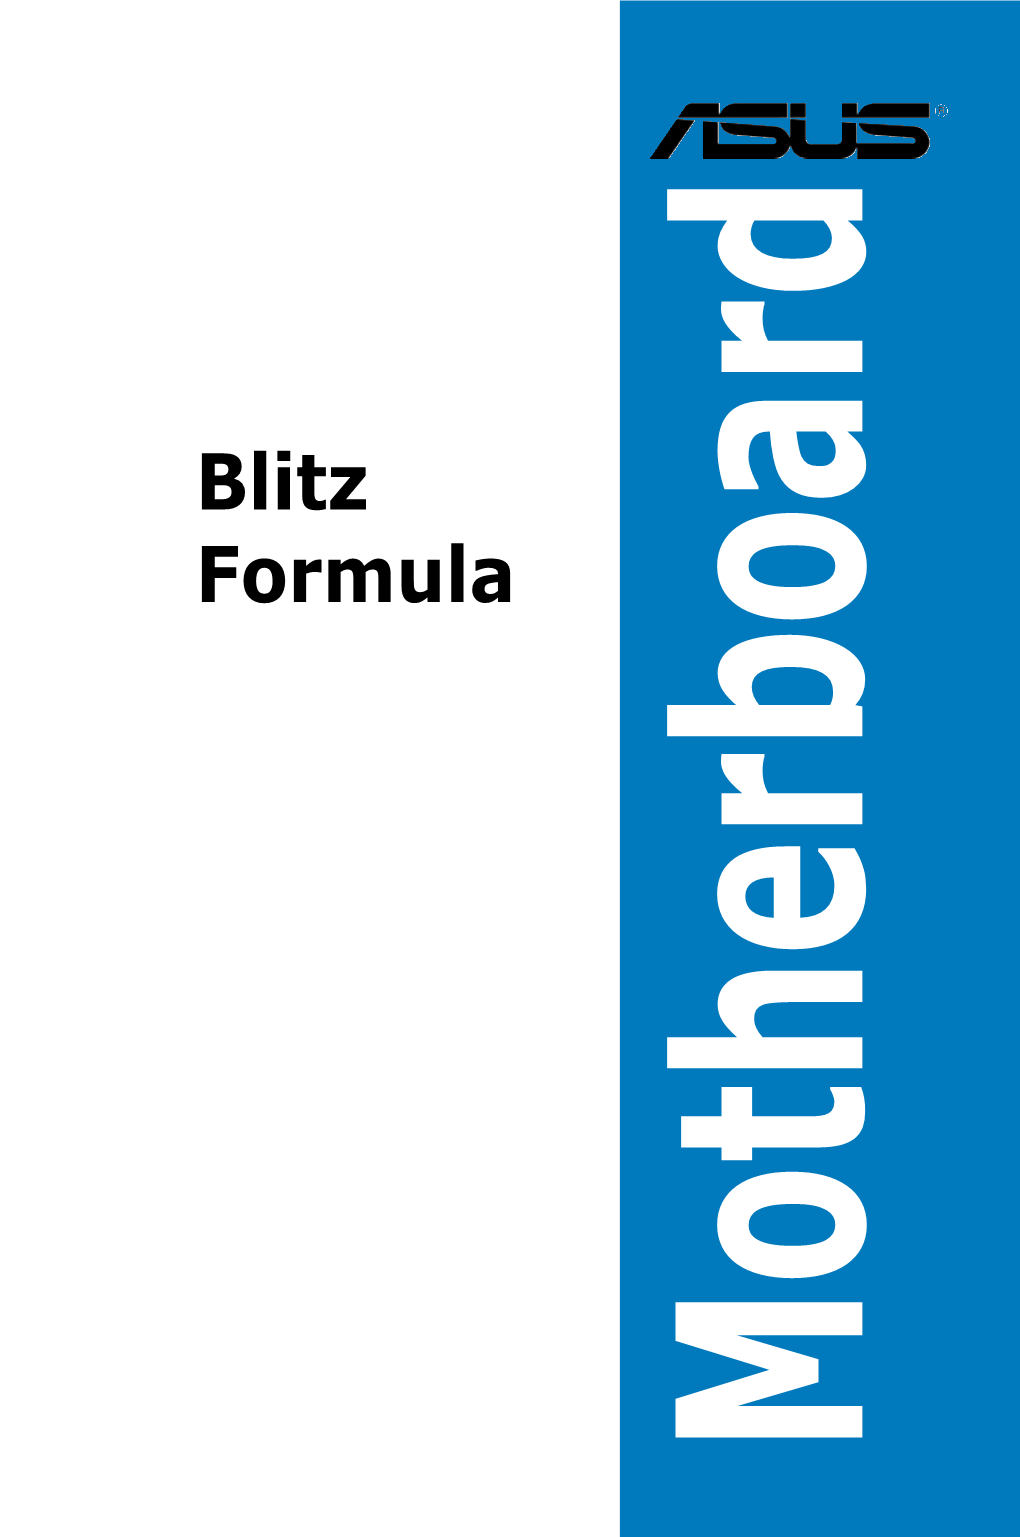 Blitz Formula Specifications Summary